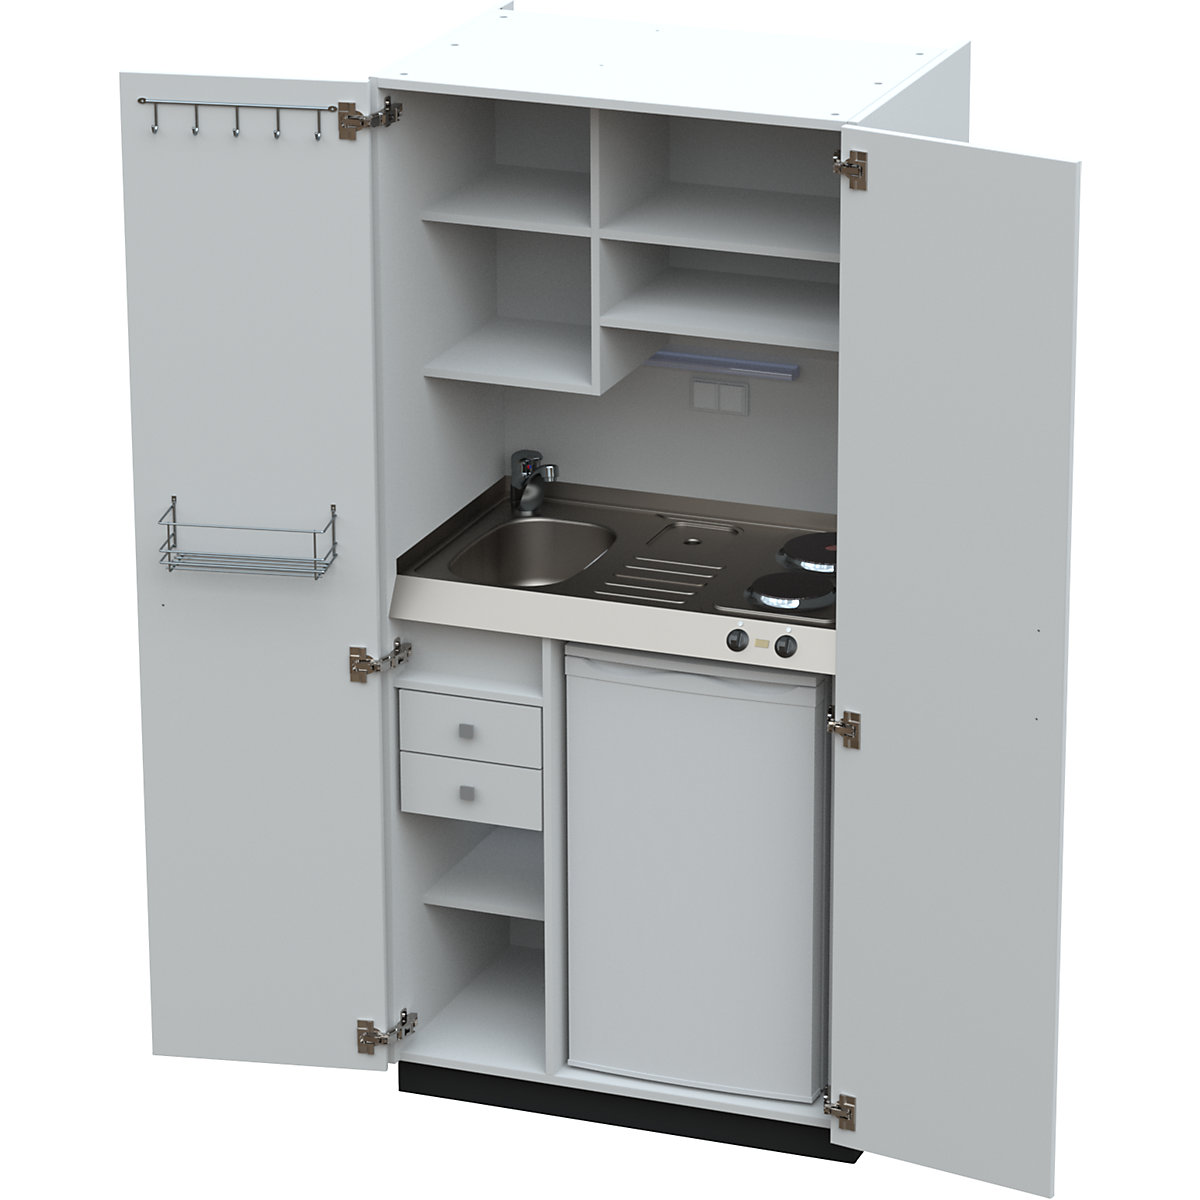 Cocina-armario con puertas batientes: 2 placas de cocción eléctricas,  fregadero a la izquierda